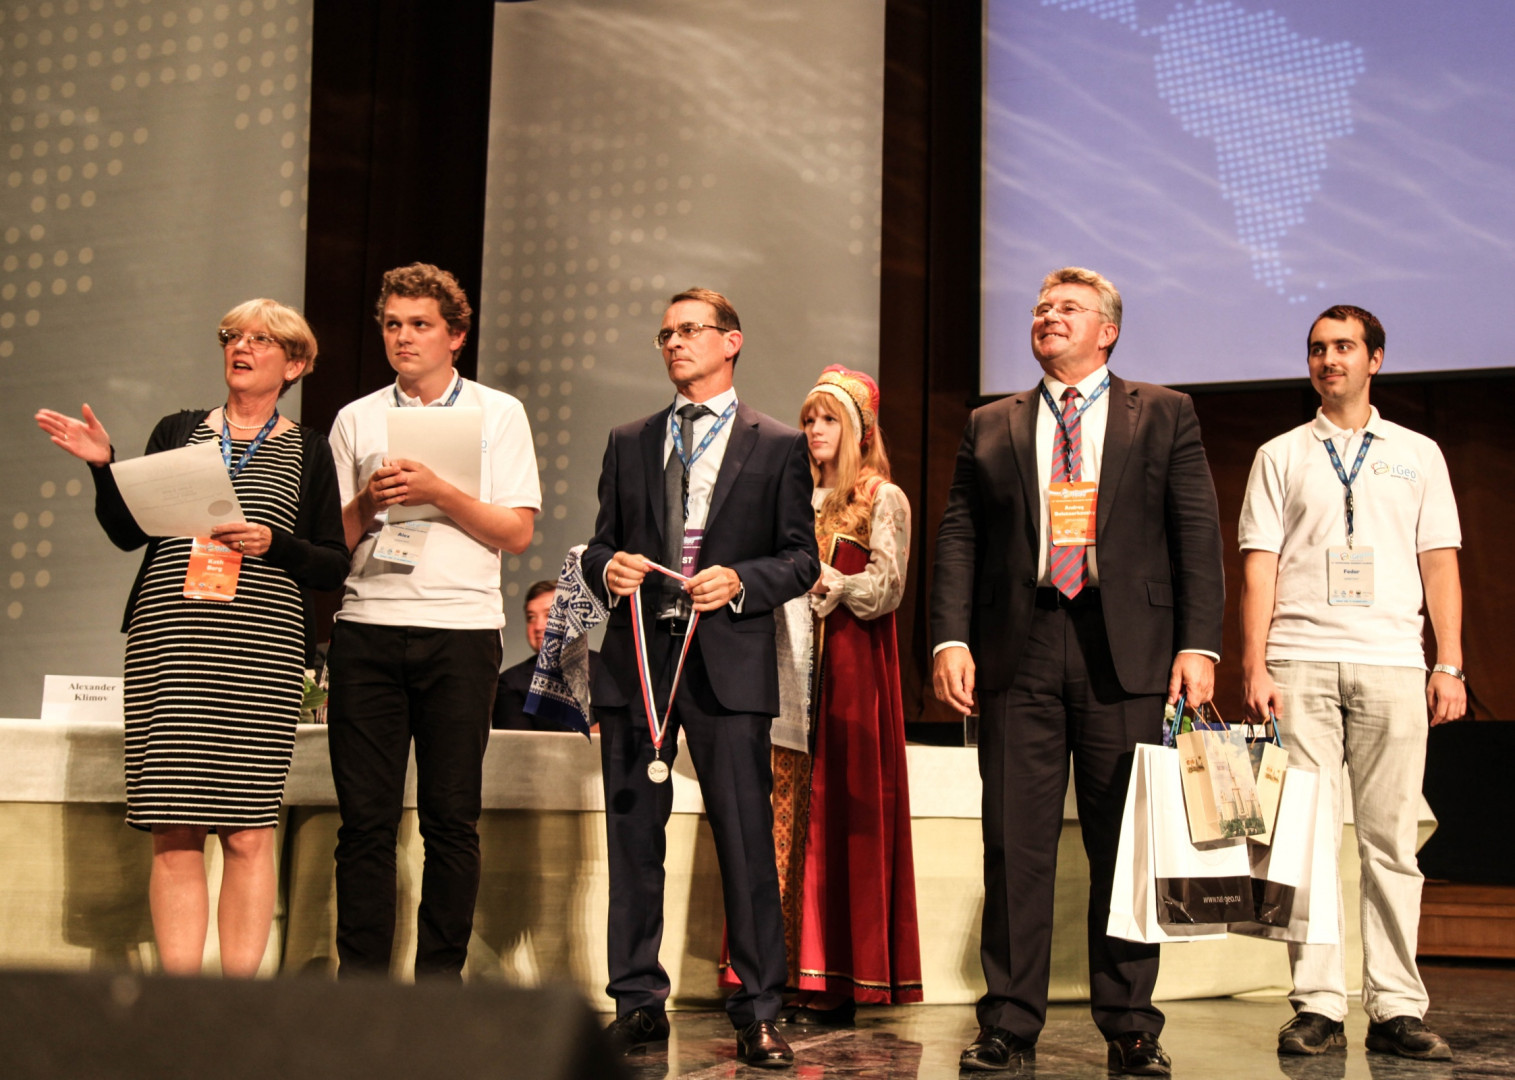 Региональная Конференция МГС (IGUMoscow, 17-21 августа 2015)